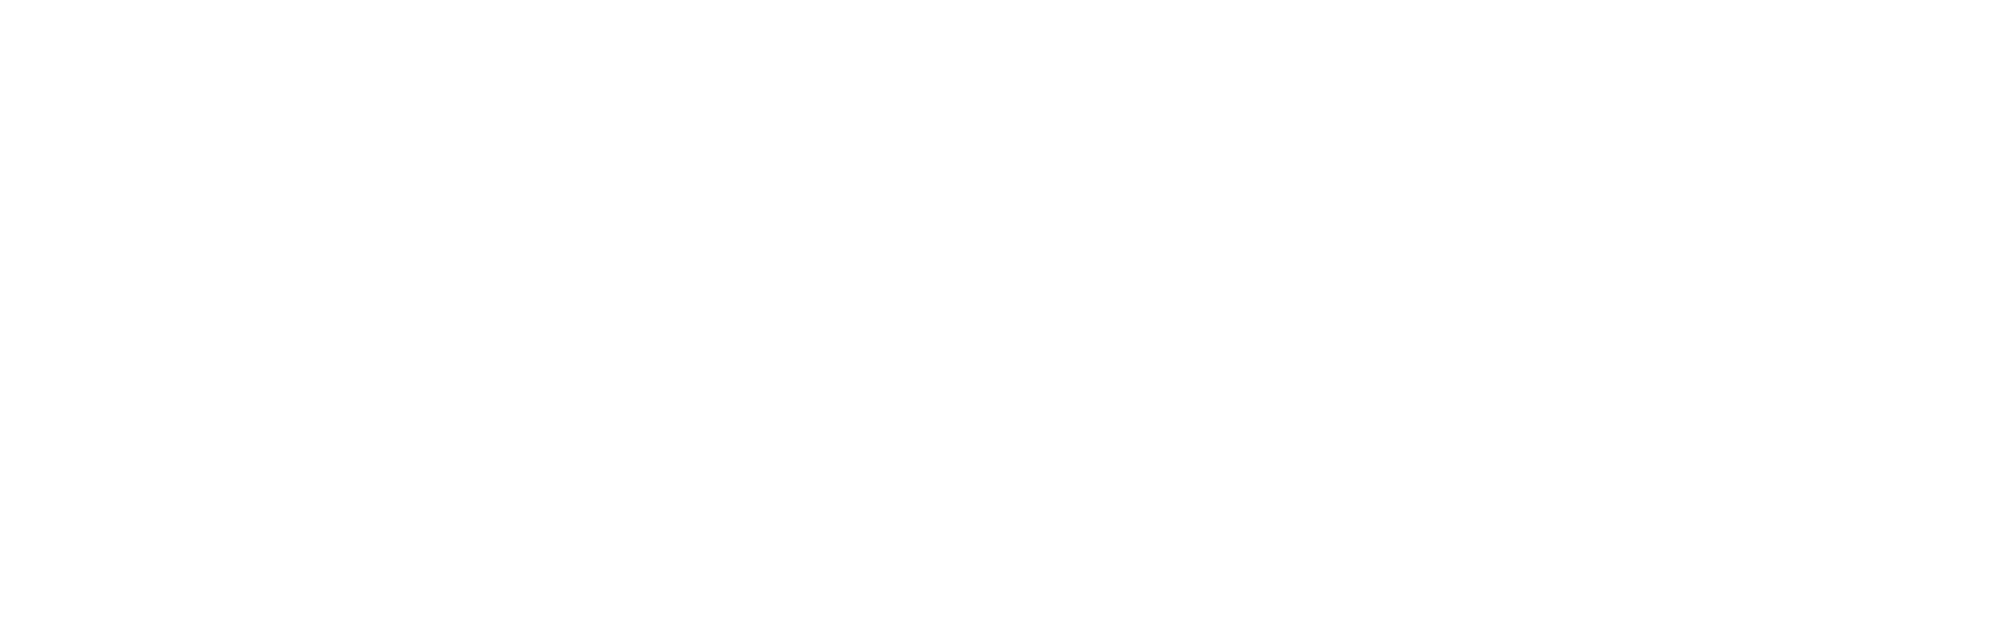 Çerez Politikası - Leather harmonica - Premium handmade leather goods